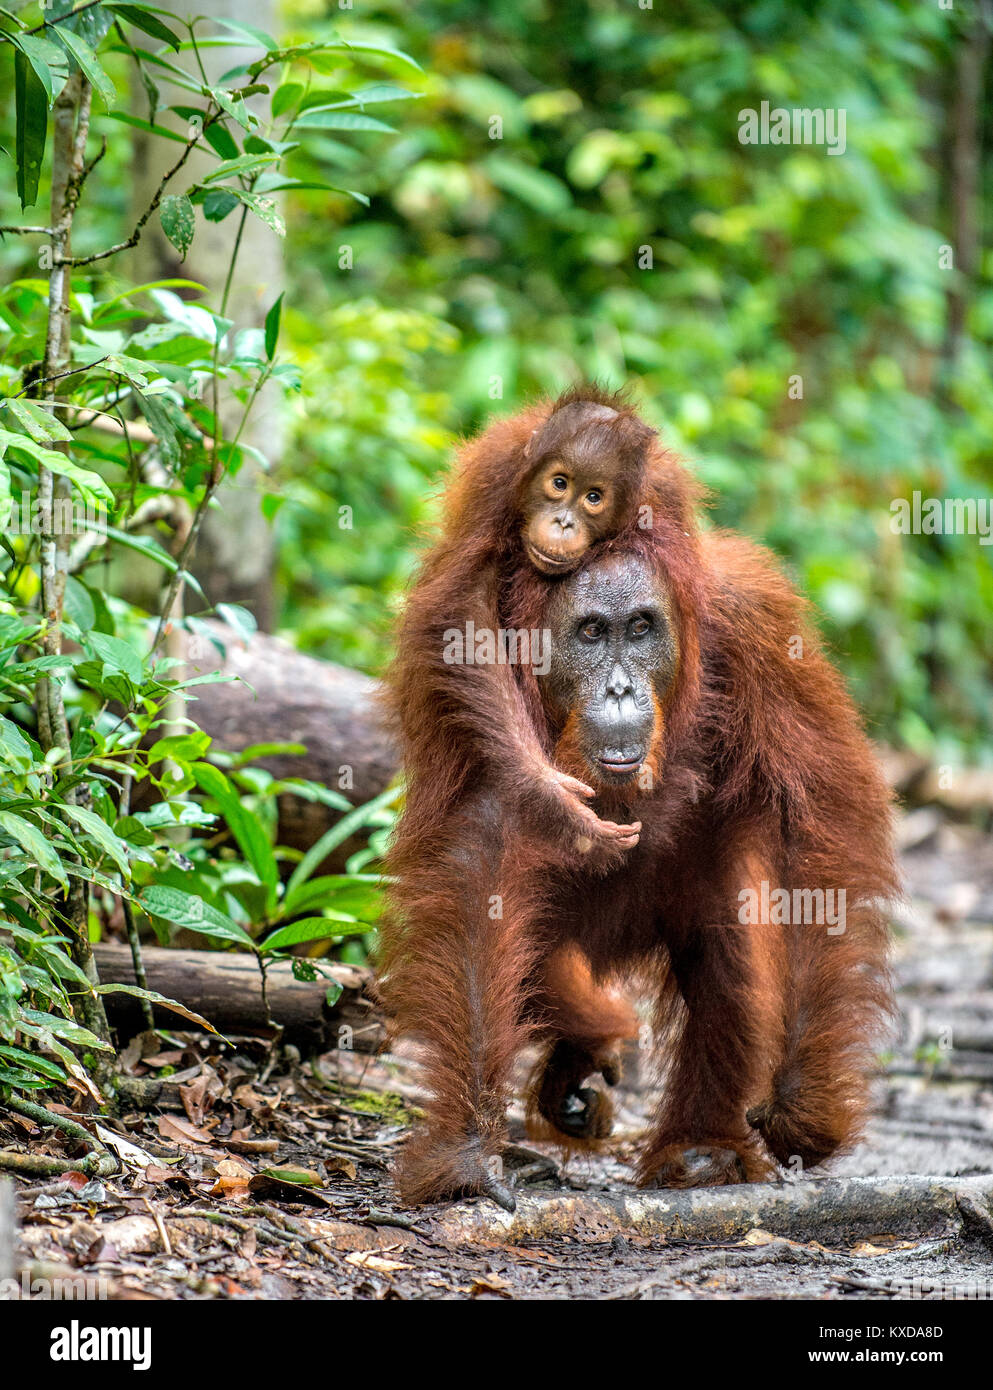 Une femelle de l'orang-outan avec un cub dans un habitat naturel. L'orang-outan de Bornéo Central (Pongo pygmaeus) wurmbii dans la nature sauvage. Rainf Tropical sauvage Banque D'Images